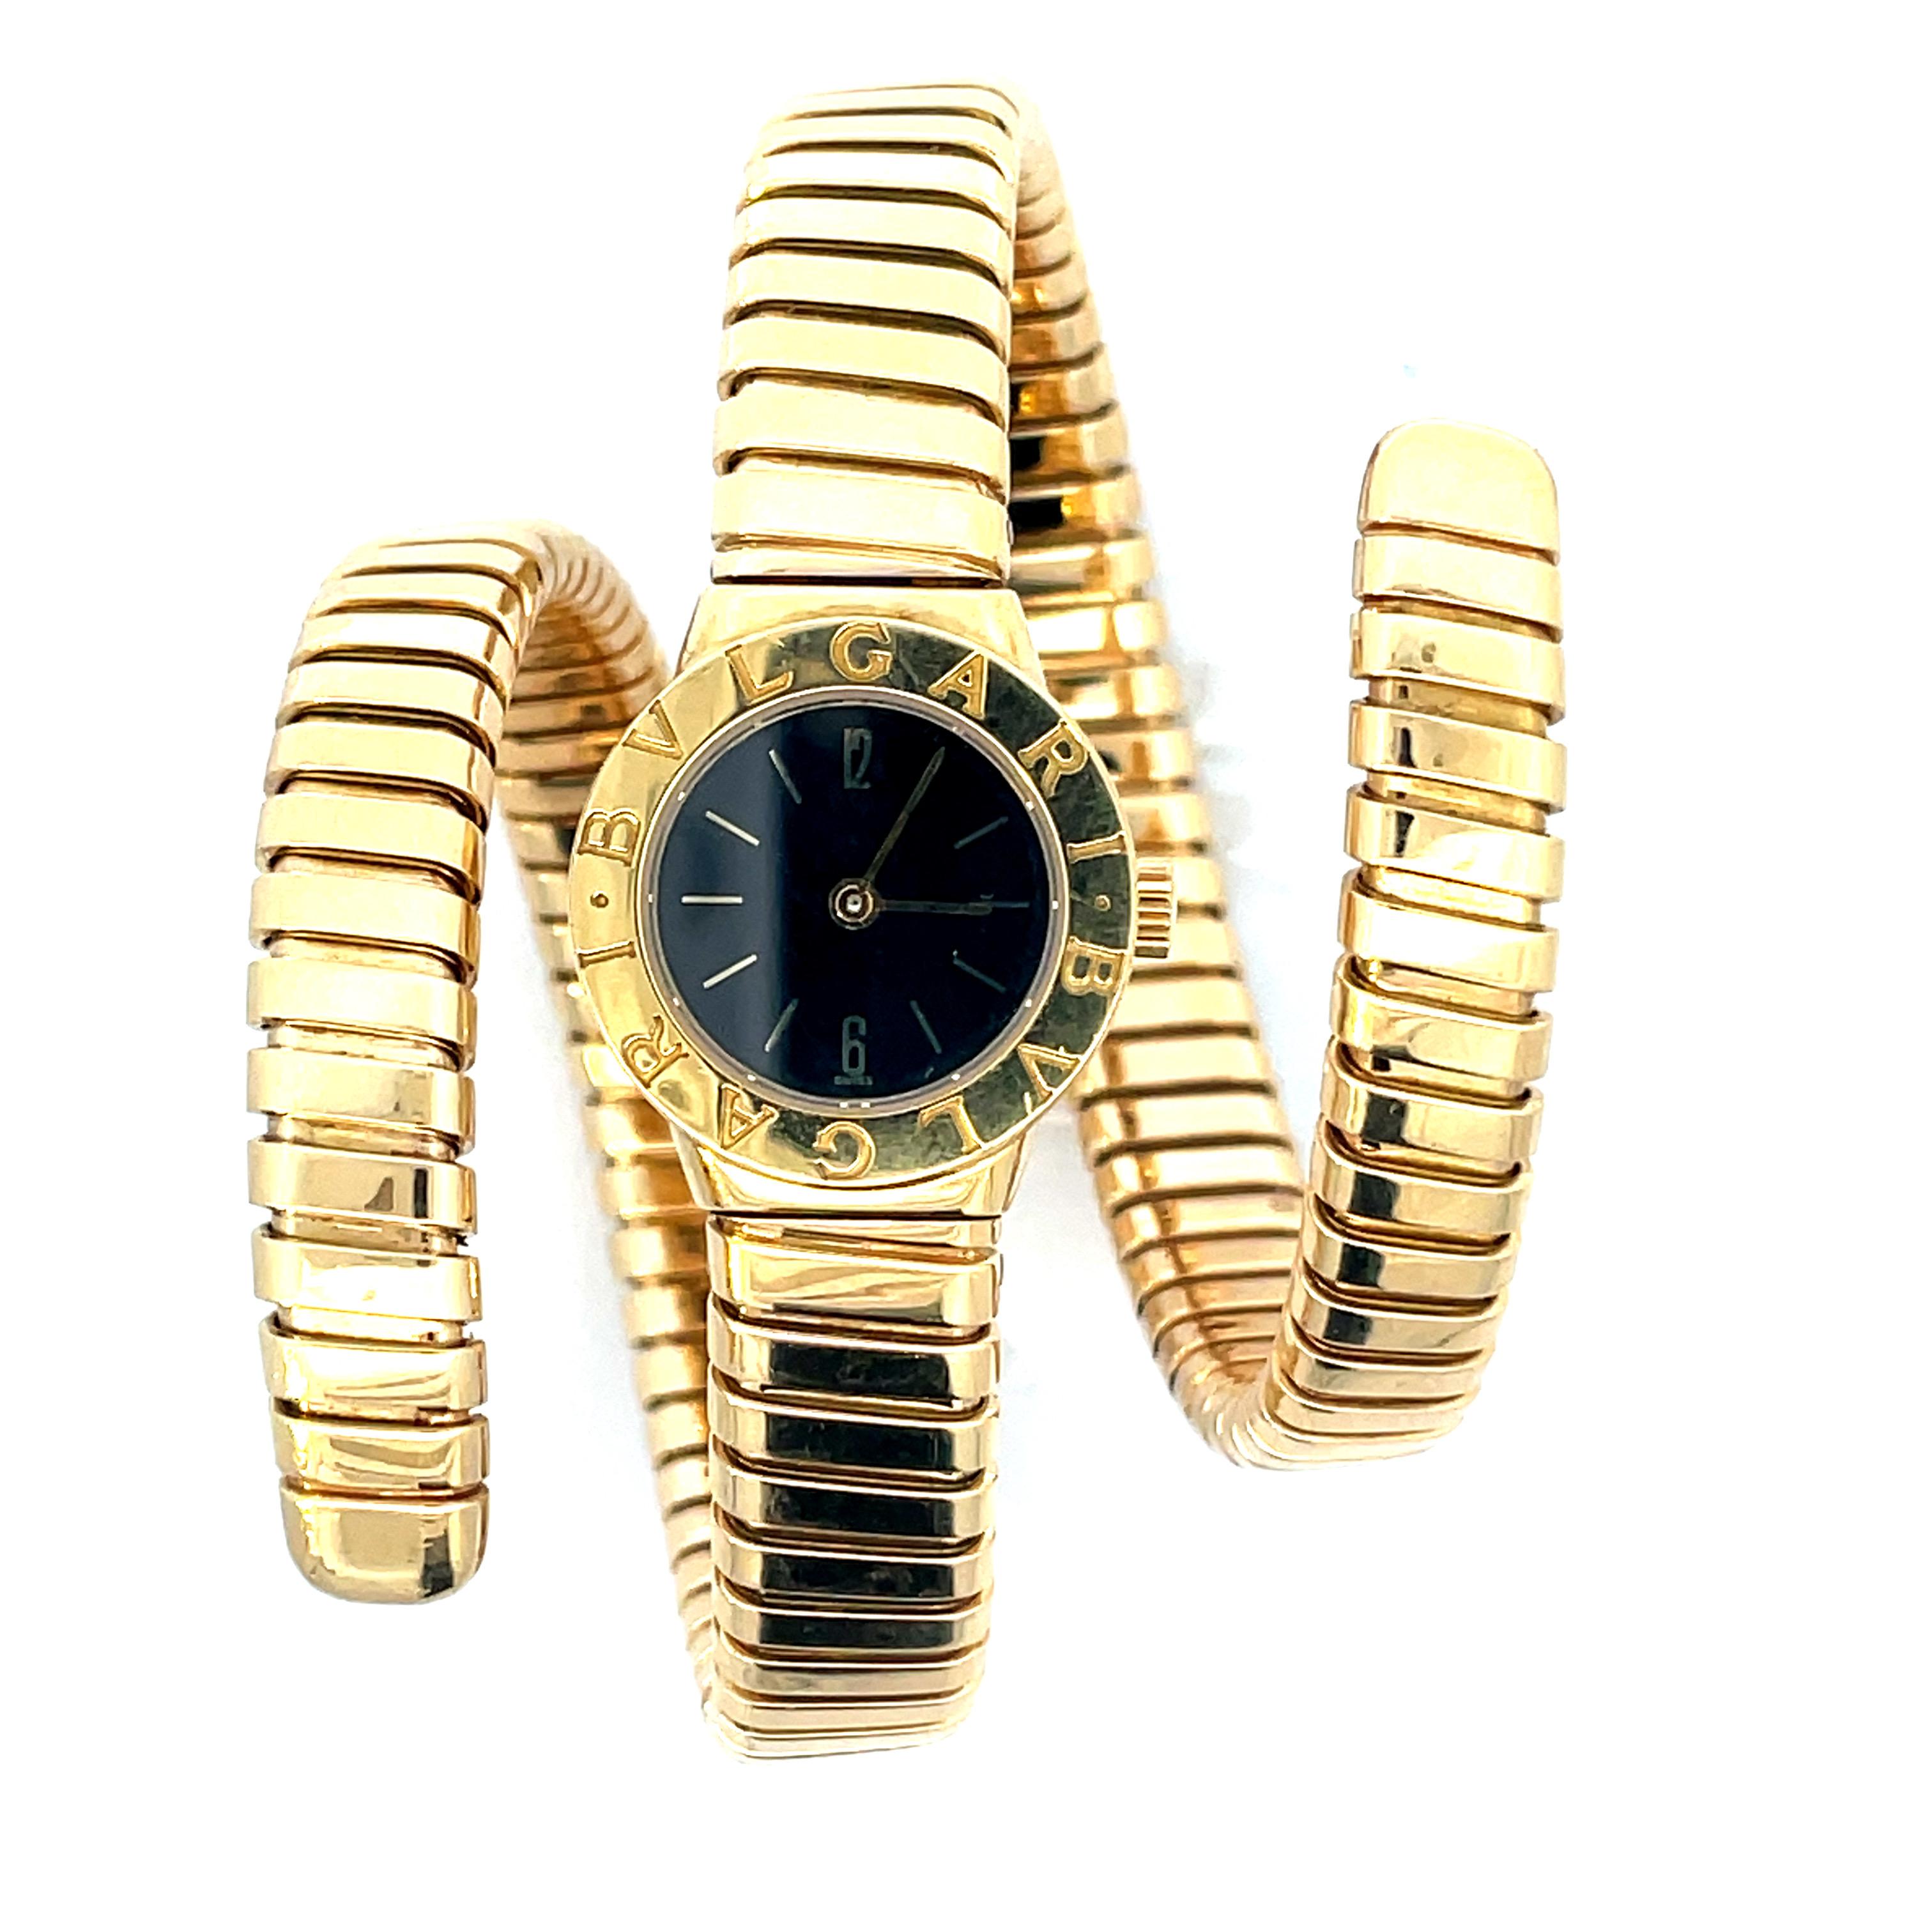 Reloj Bulgari Tubogas de señora con brazalete de serpiente en oro amarillo de 18 quilates, con un impresionante y raro movimiento central de relojería. Este  El reloj de movimiento automático tiene la cabeza redonda y la esfera negra. Un reloj